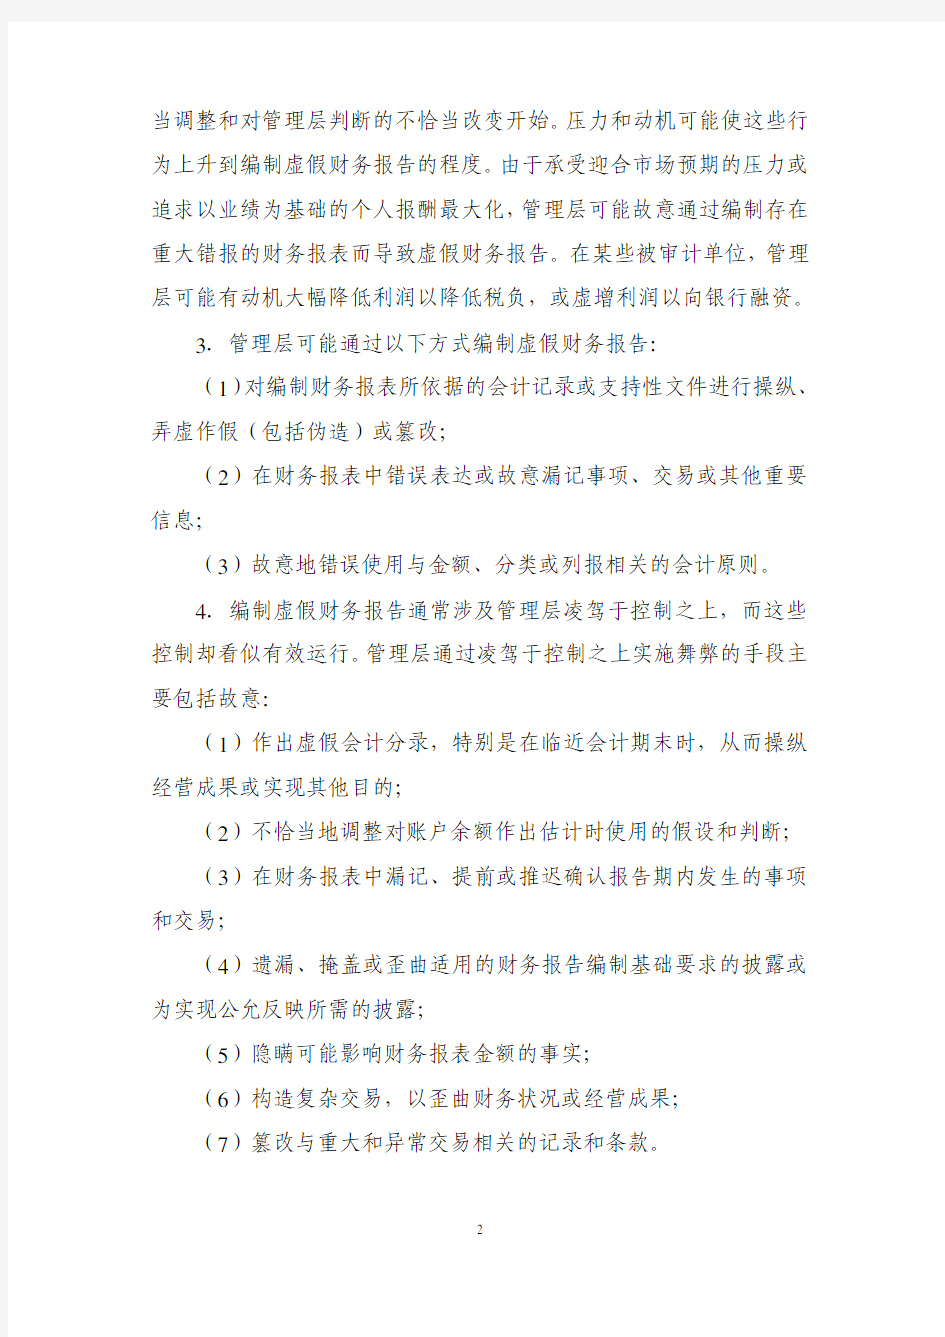 《中国注册会计师审计准则第 1141 号—— 财务报表审计中与舞弊相关的责任》 应用指南